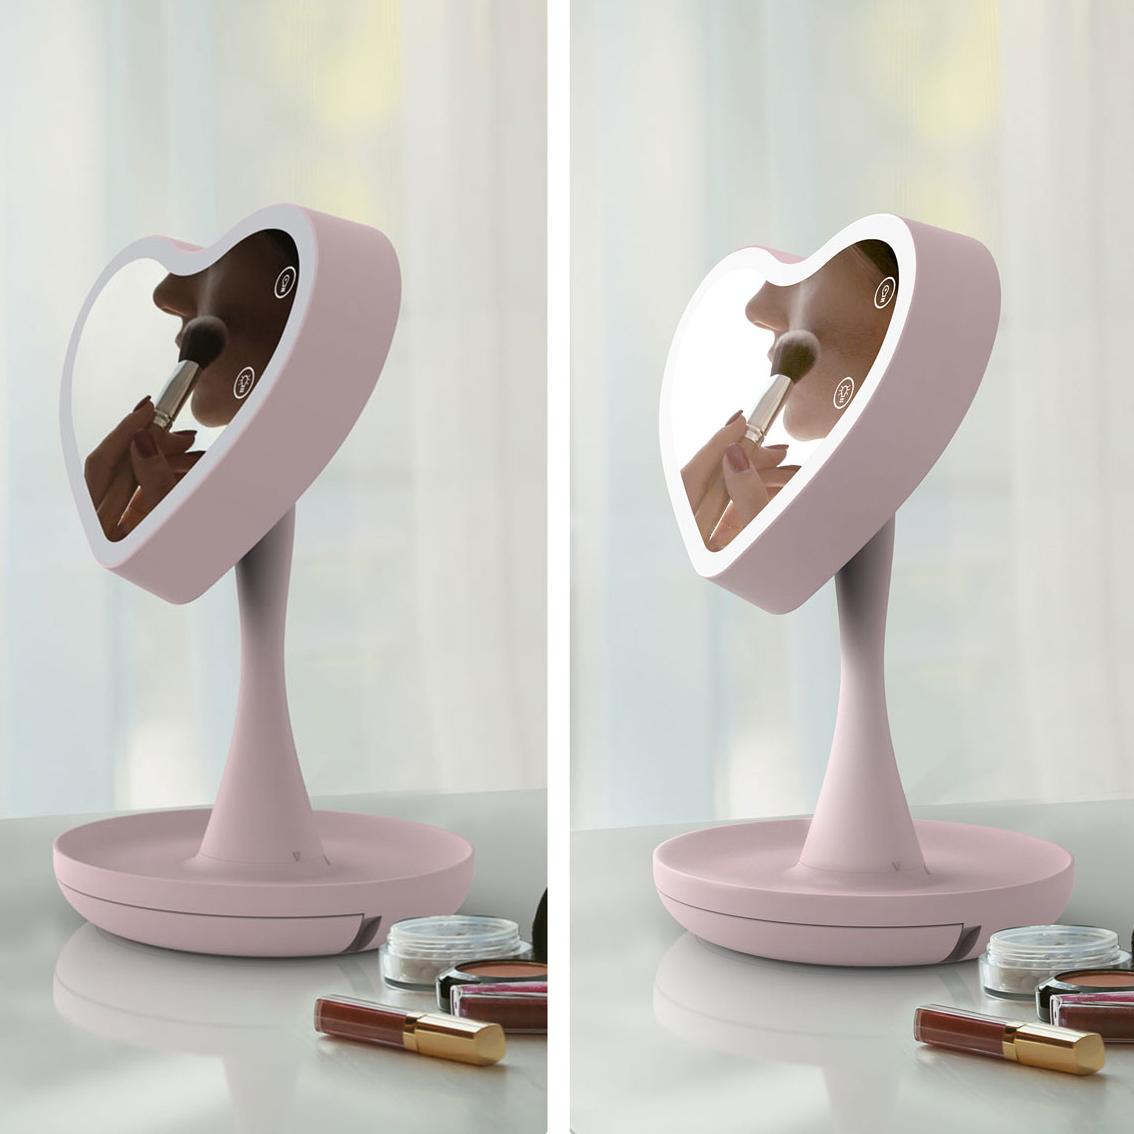 Зеркало с подсветкой Сердце CG Mirroir Heart Pink